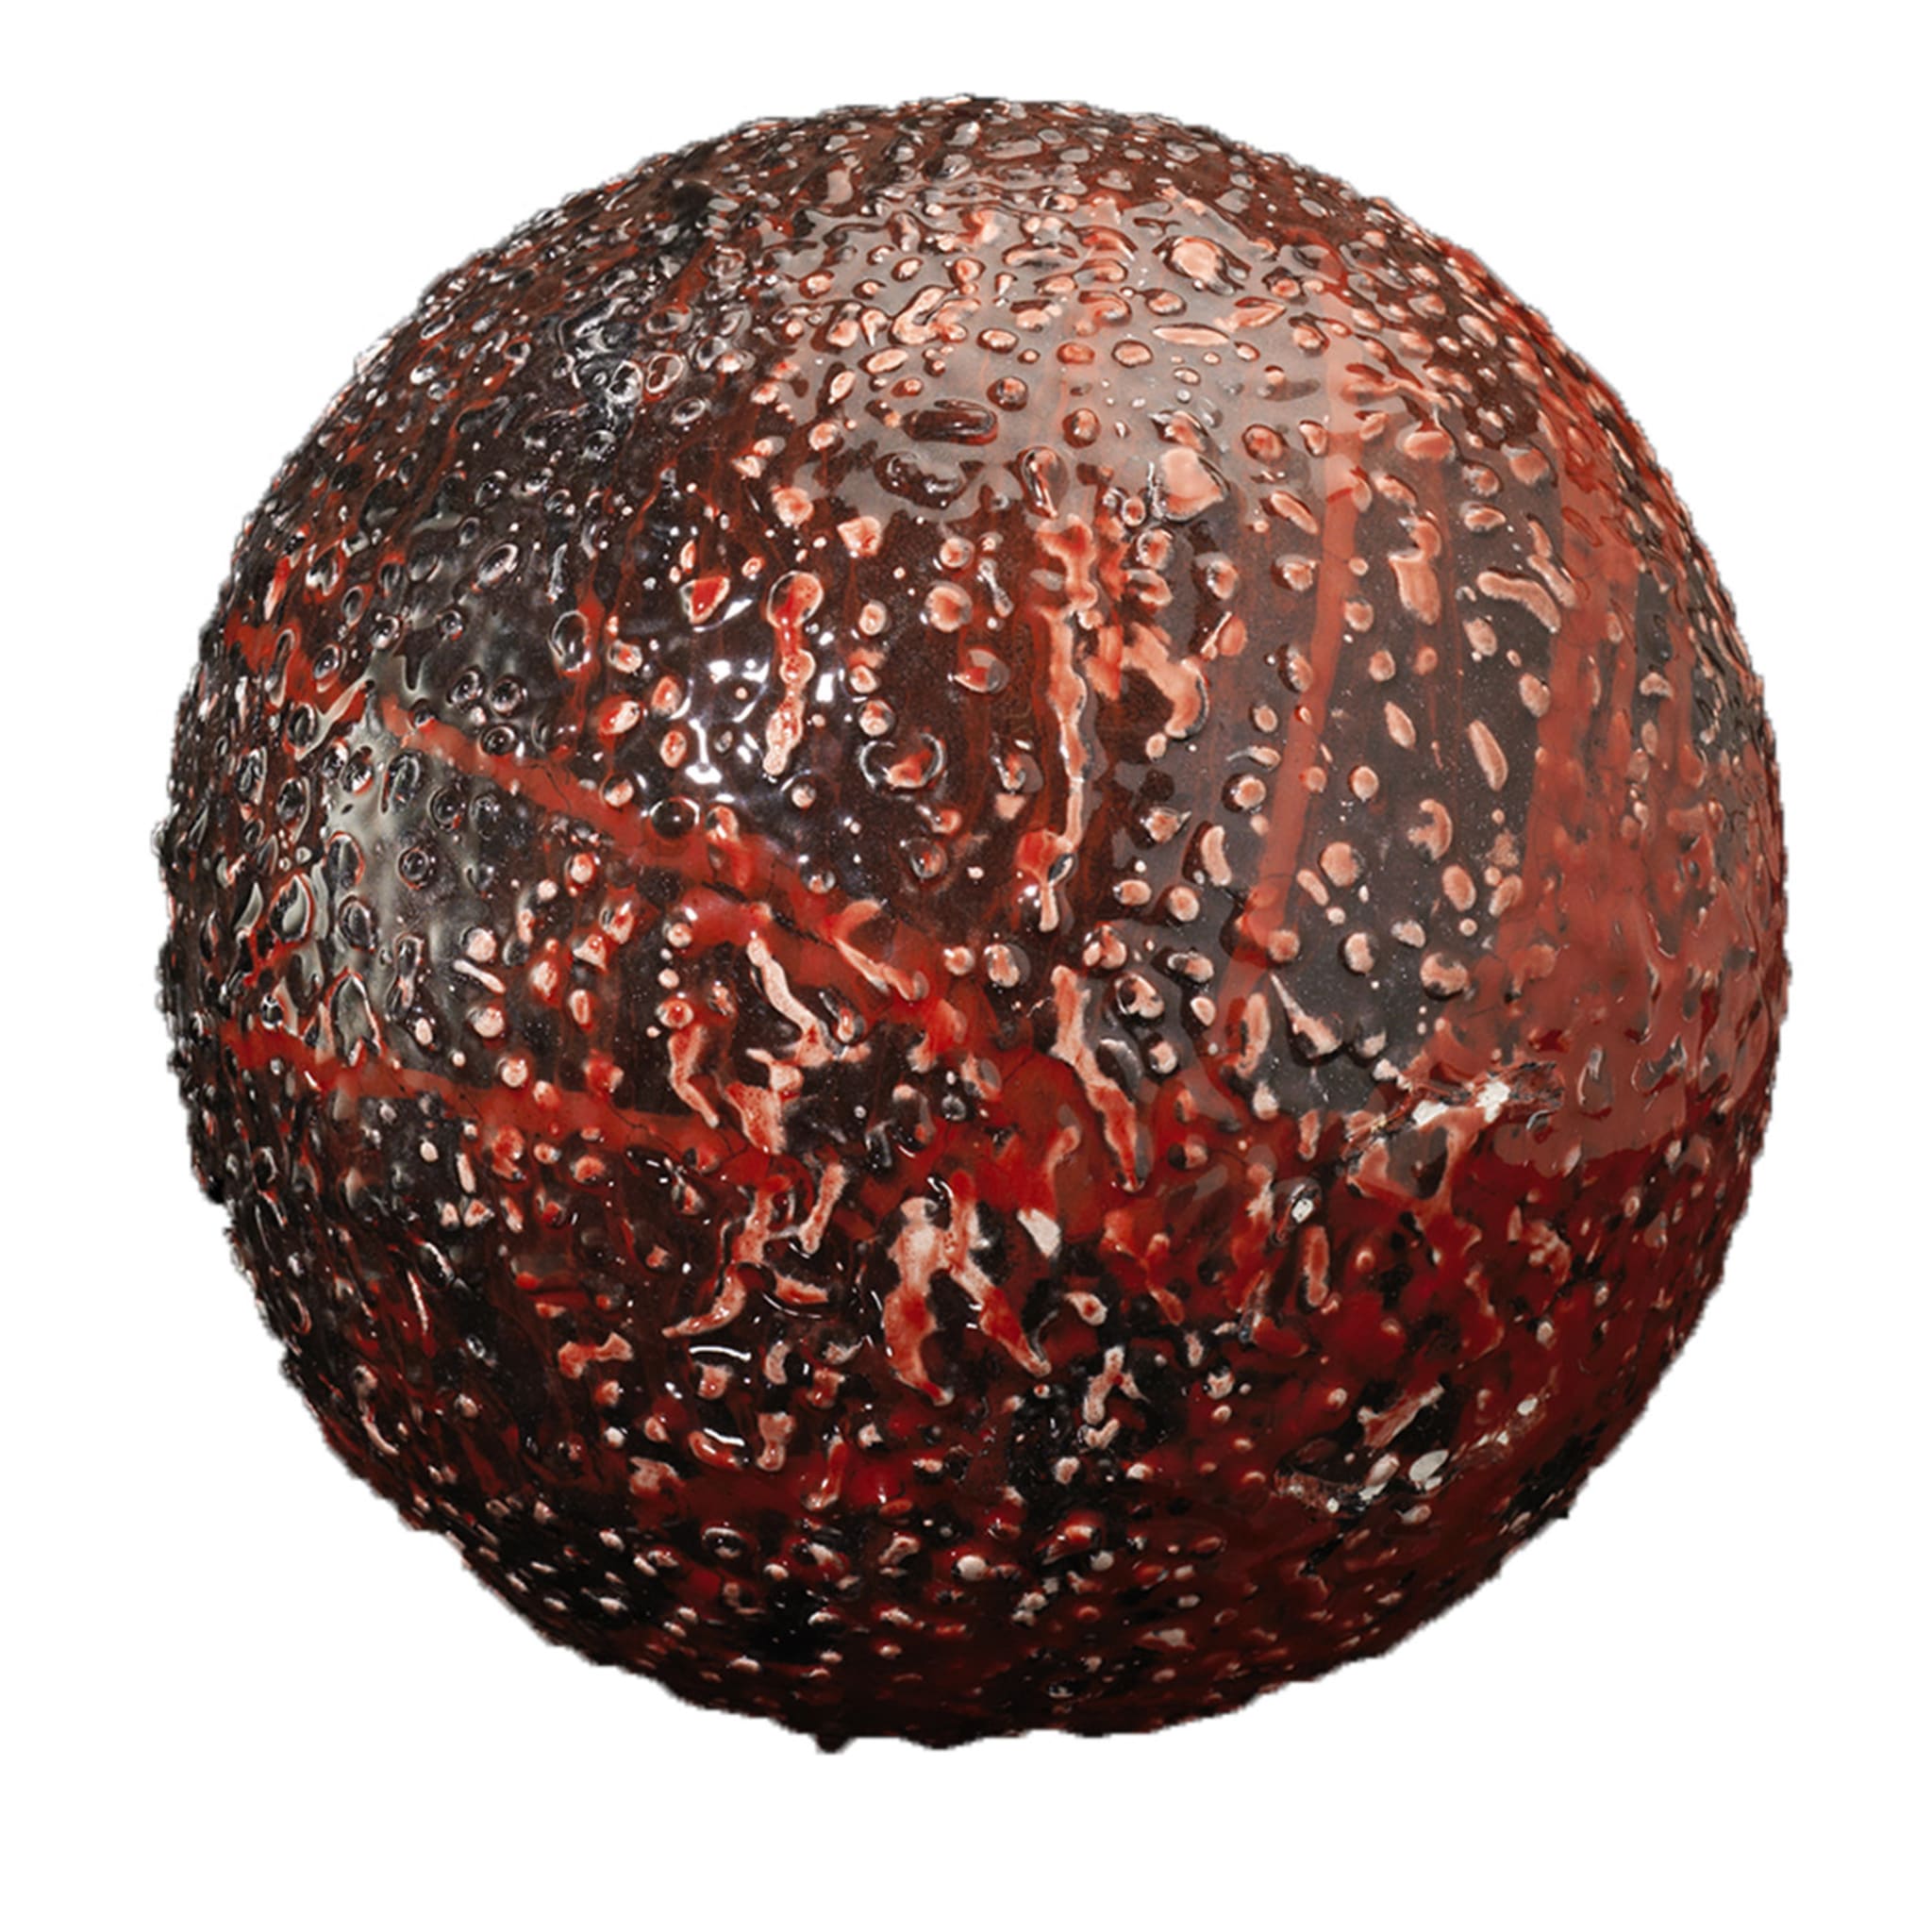 Sfera decorativa in argilla rossa B-Human 8.0 - Vista principale